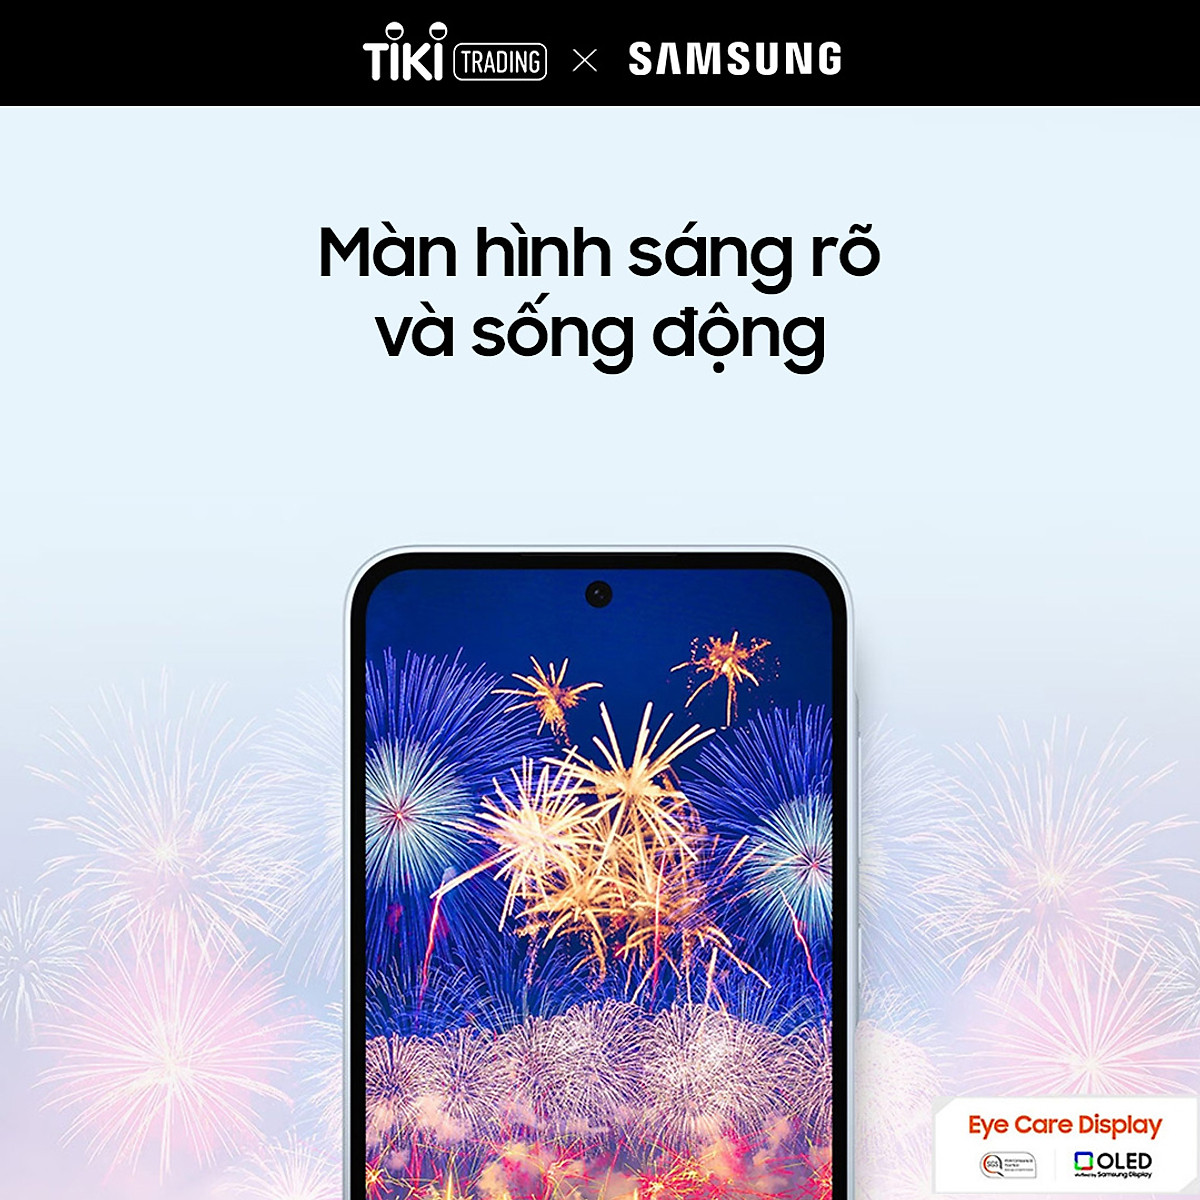 Điện Thoại Samsung Galaxy A35 5G (8GB/128GB)- Đã Kích Hoạt Điện Tử- Hàng Chính Hãng